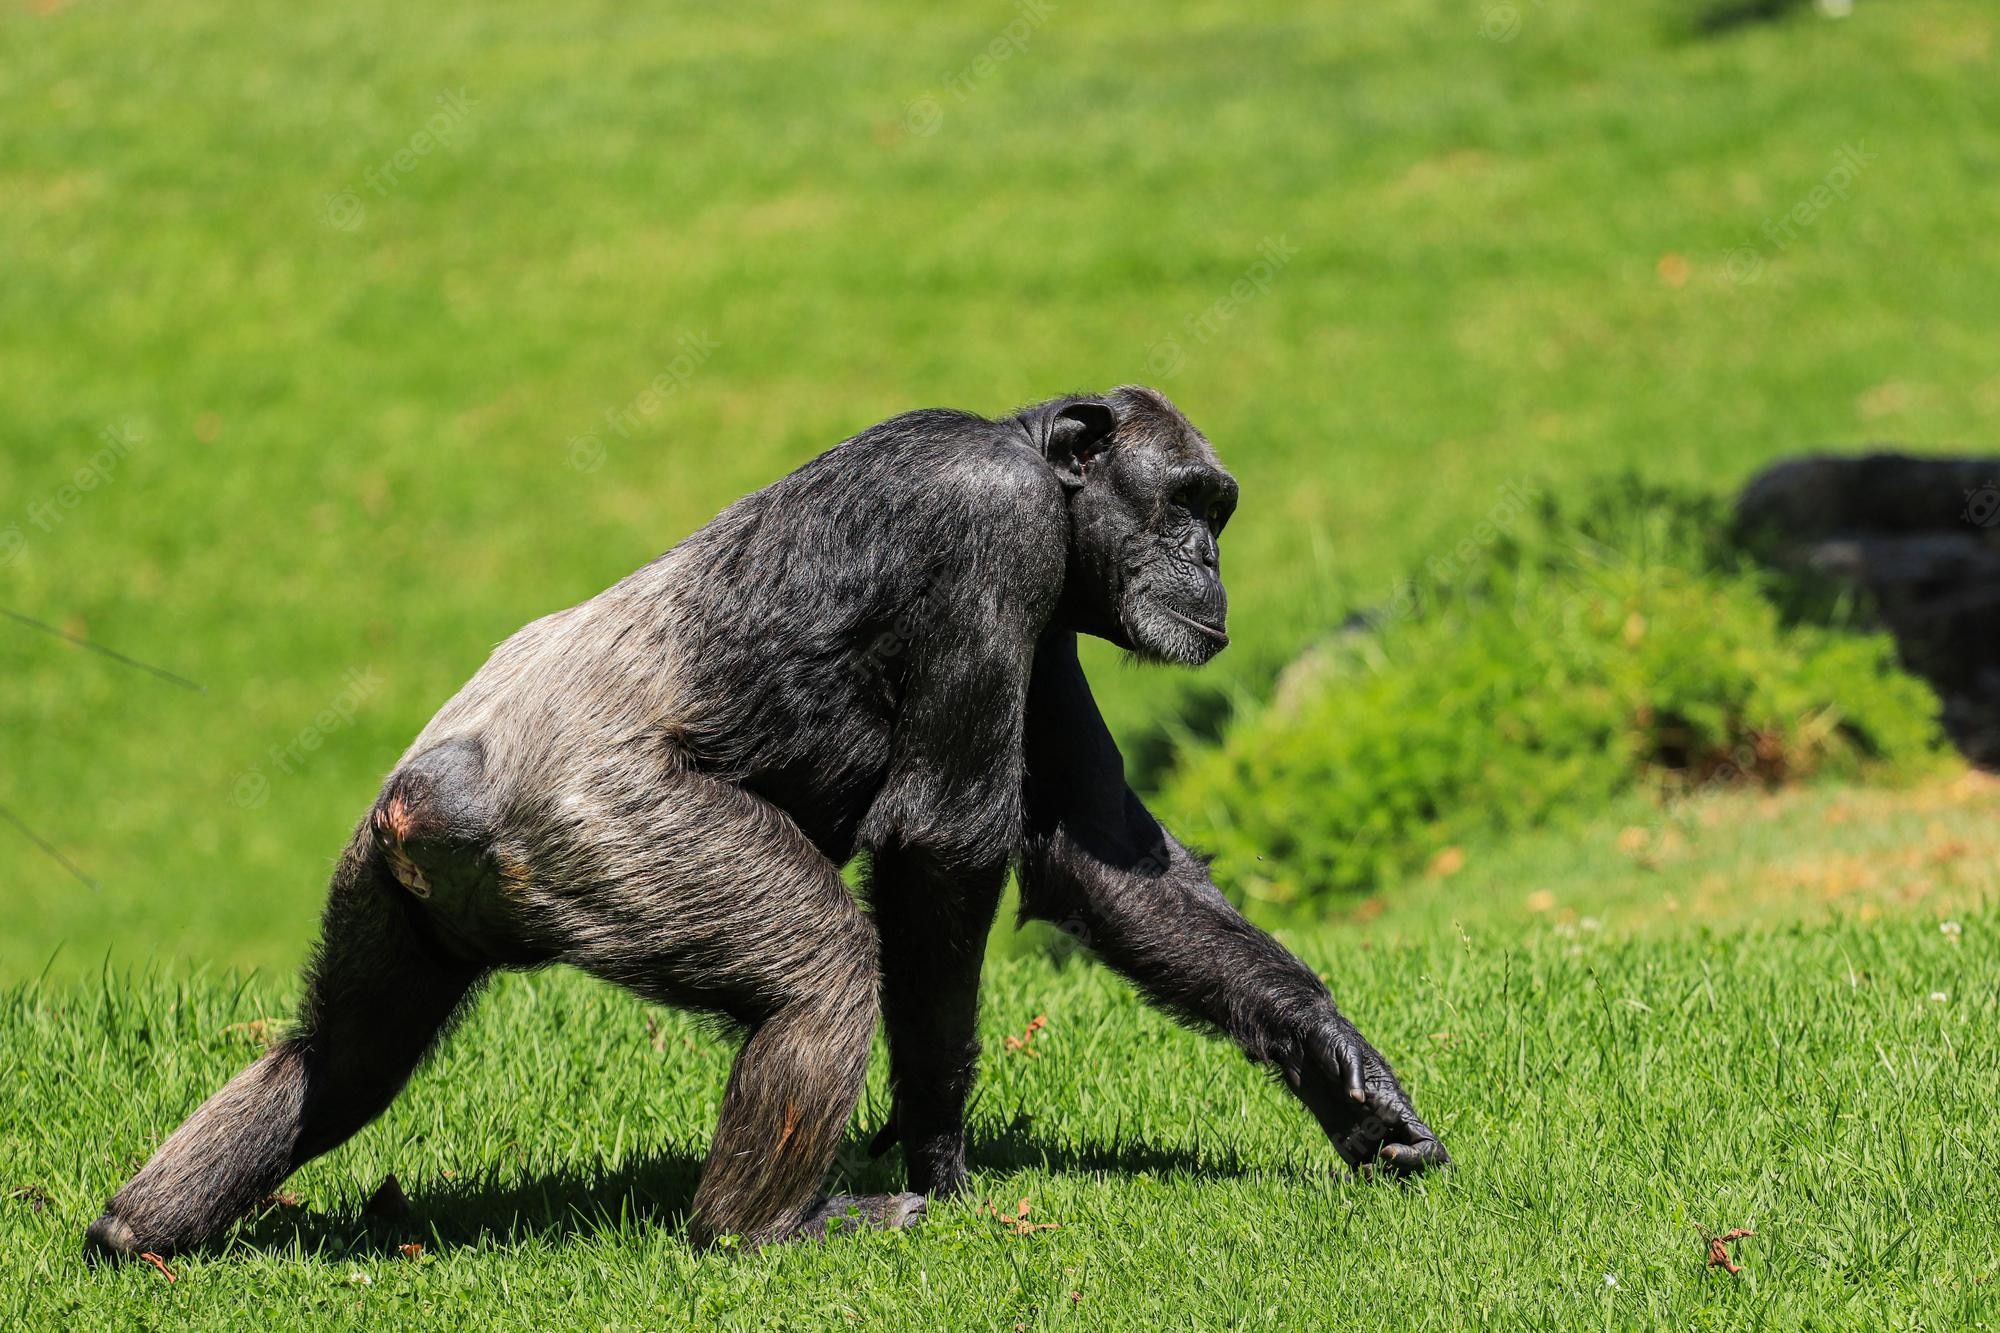 Chimpanzees sync their footsteps like humans